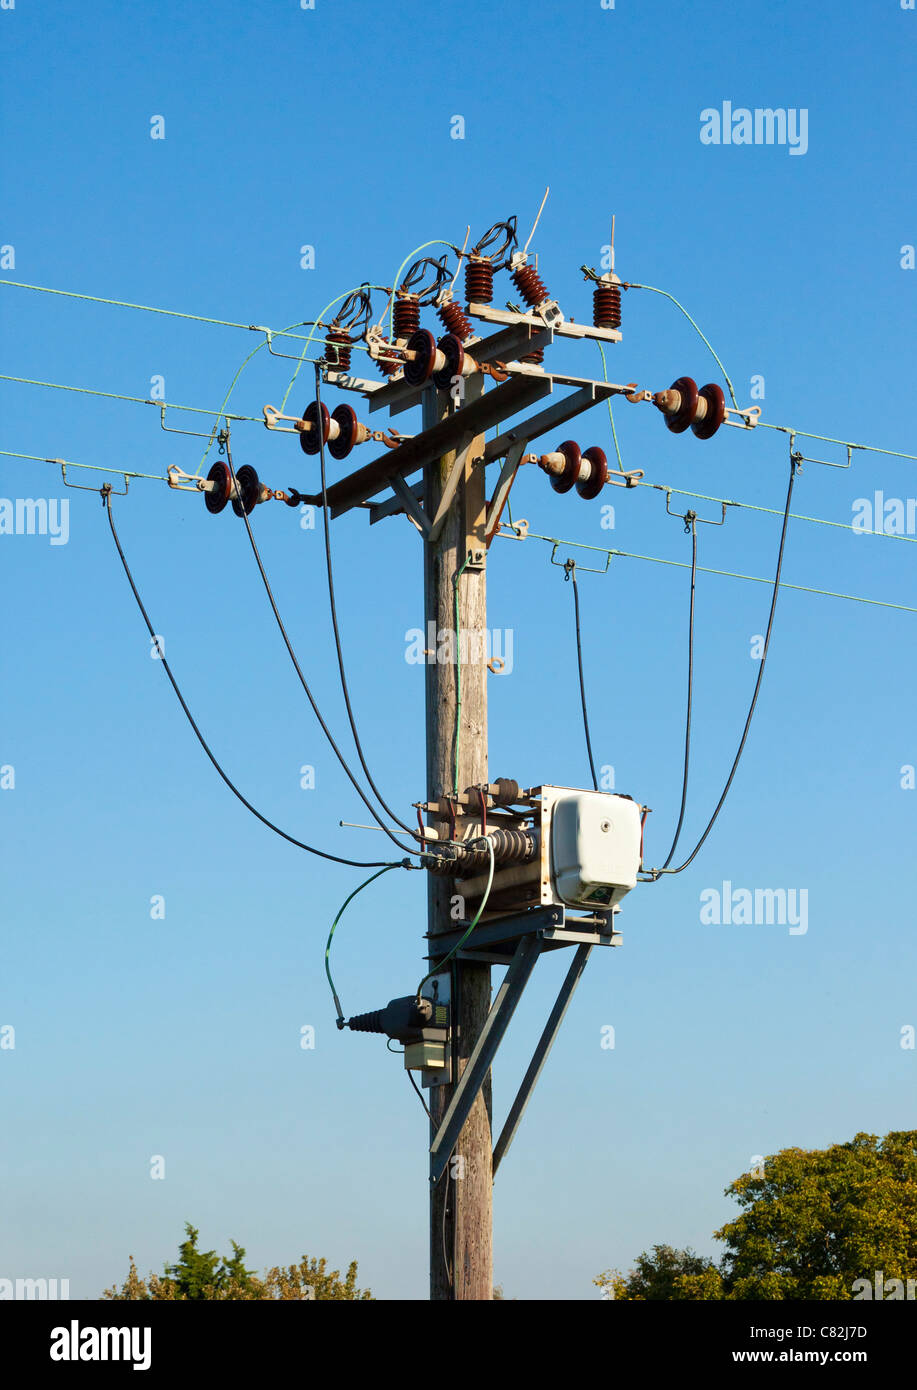 Polo de suministro de electricidad, el contactor relé, cables y aisladores Foto de stock